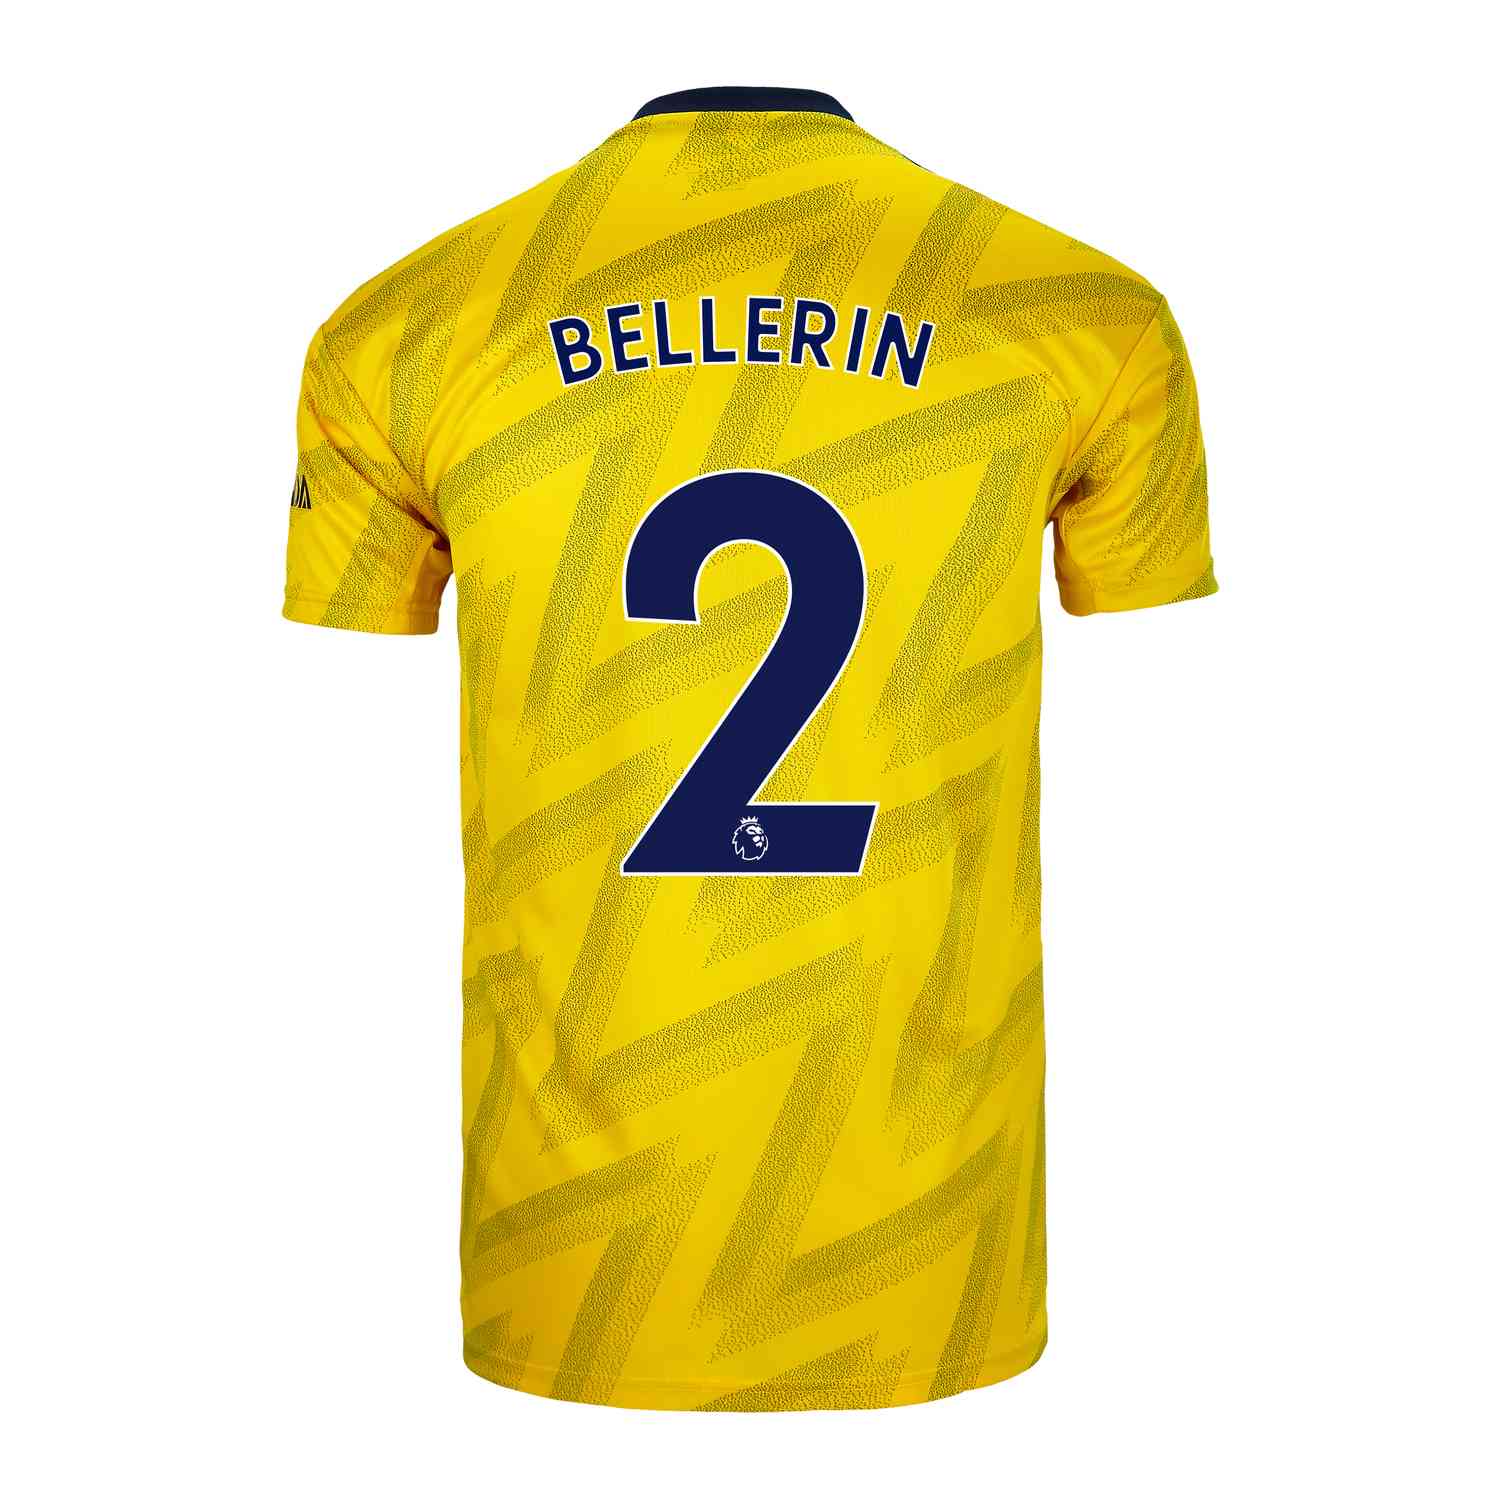 hector bellerin jersey number